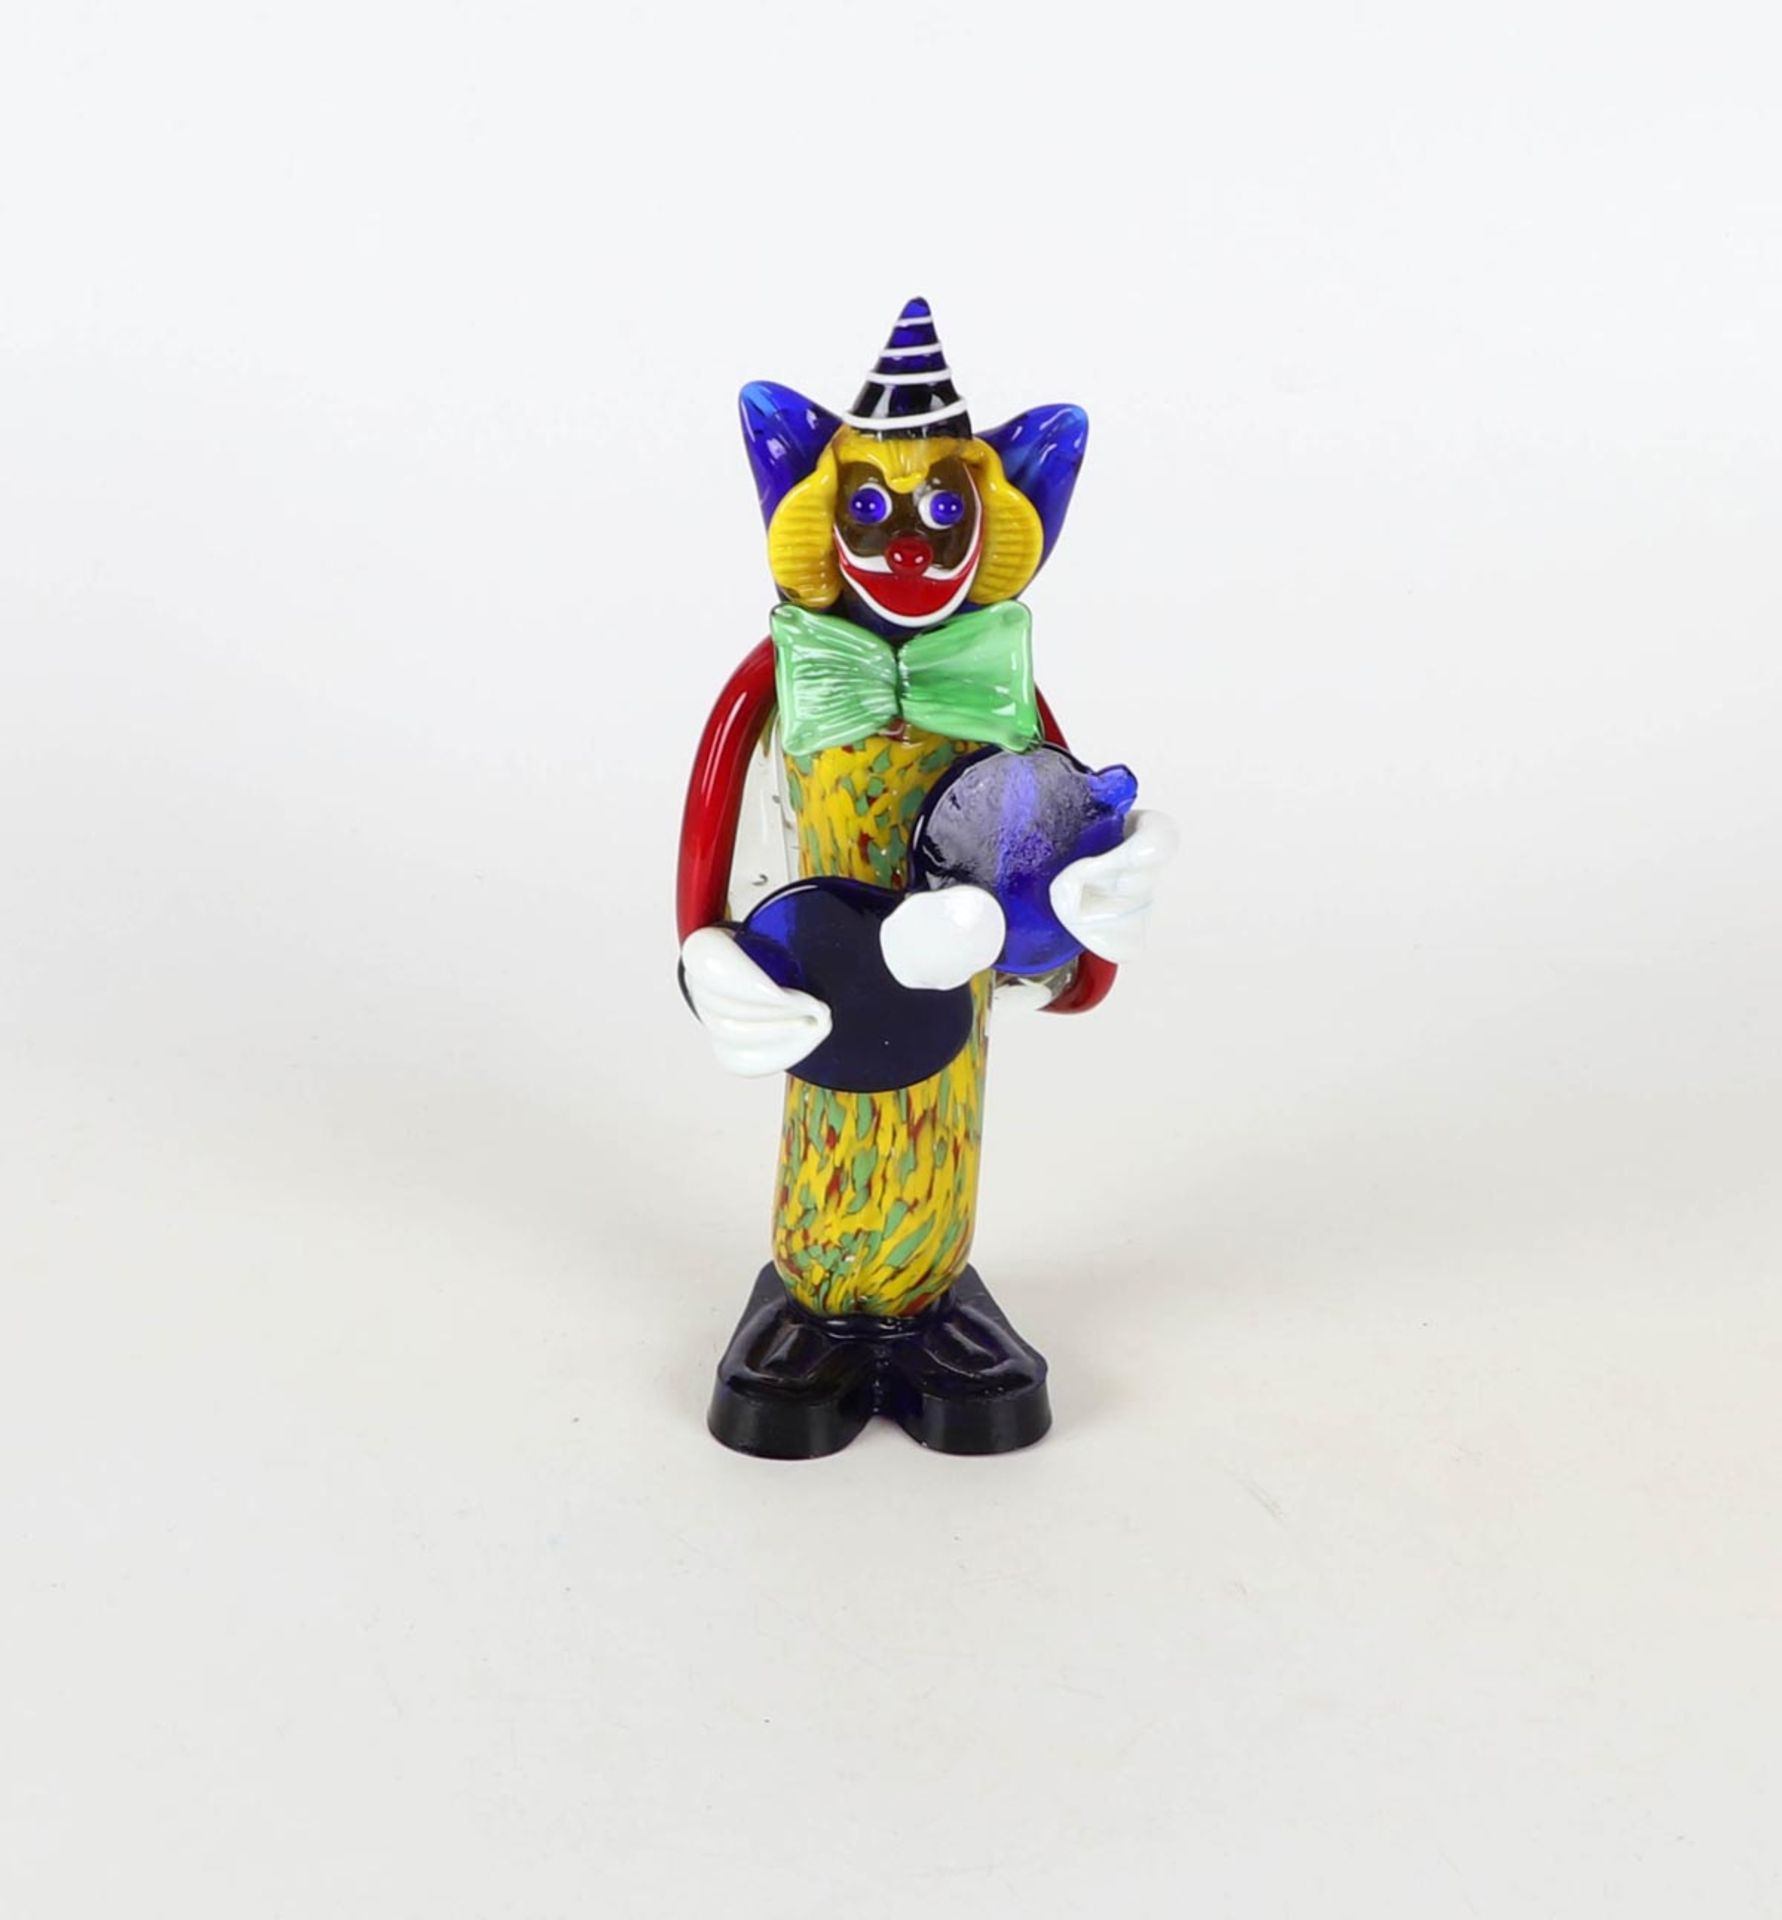 Clown, MuranoFarbloses Glas mit bunten Einfärbungen und Überfängen. Figur des Clowns mit